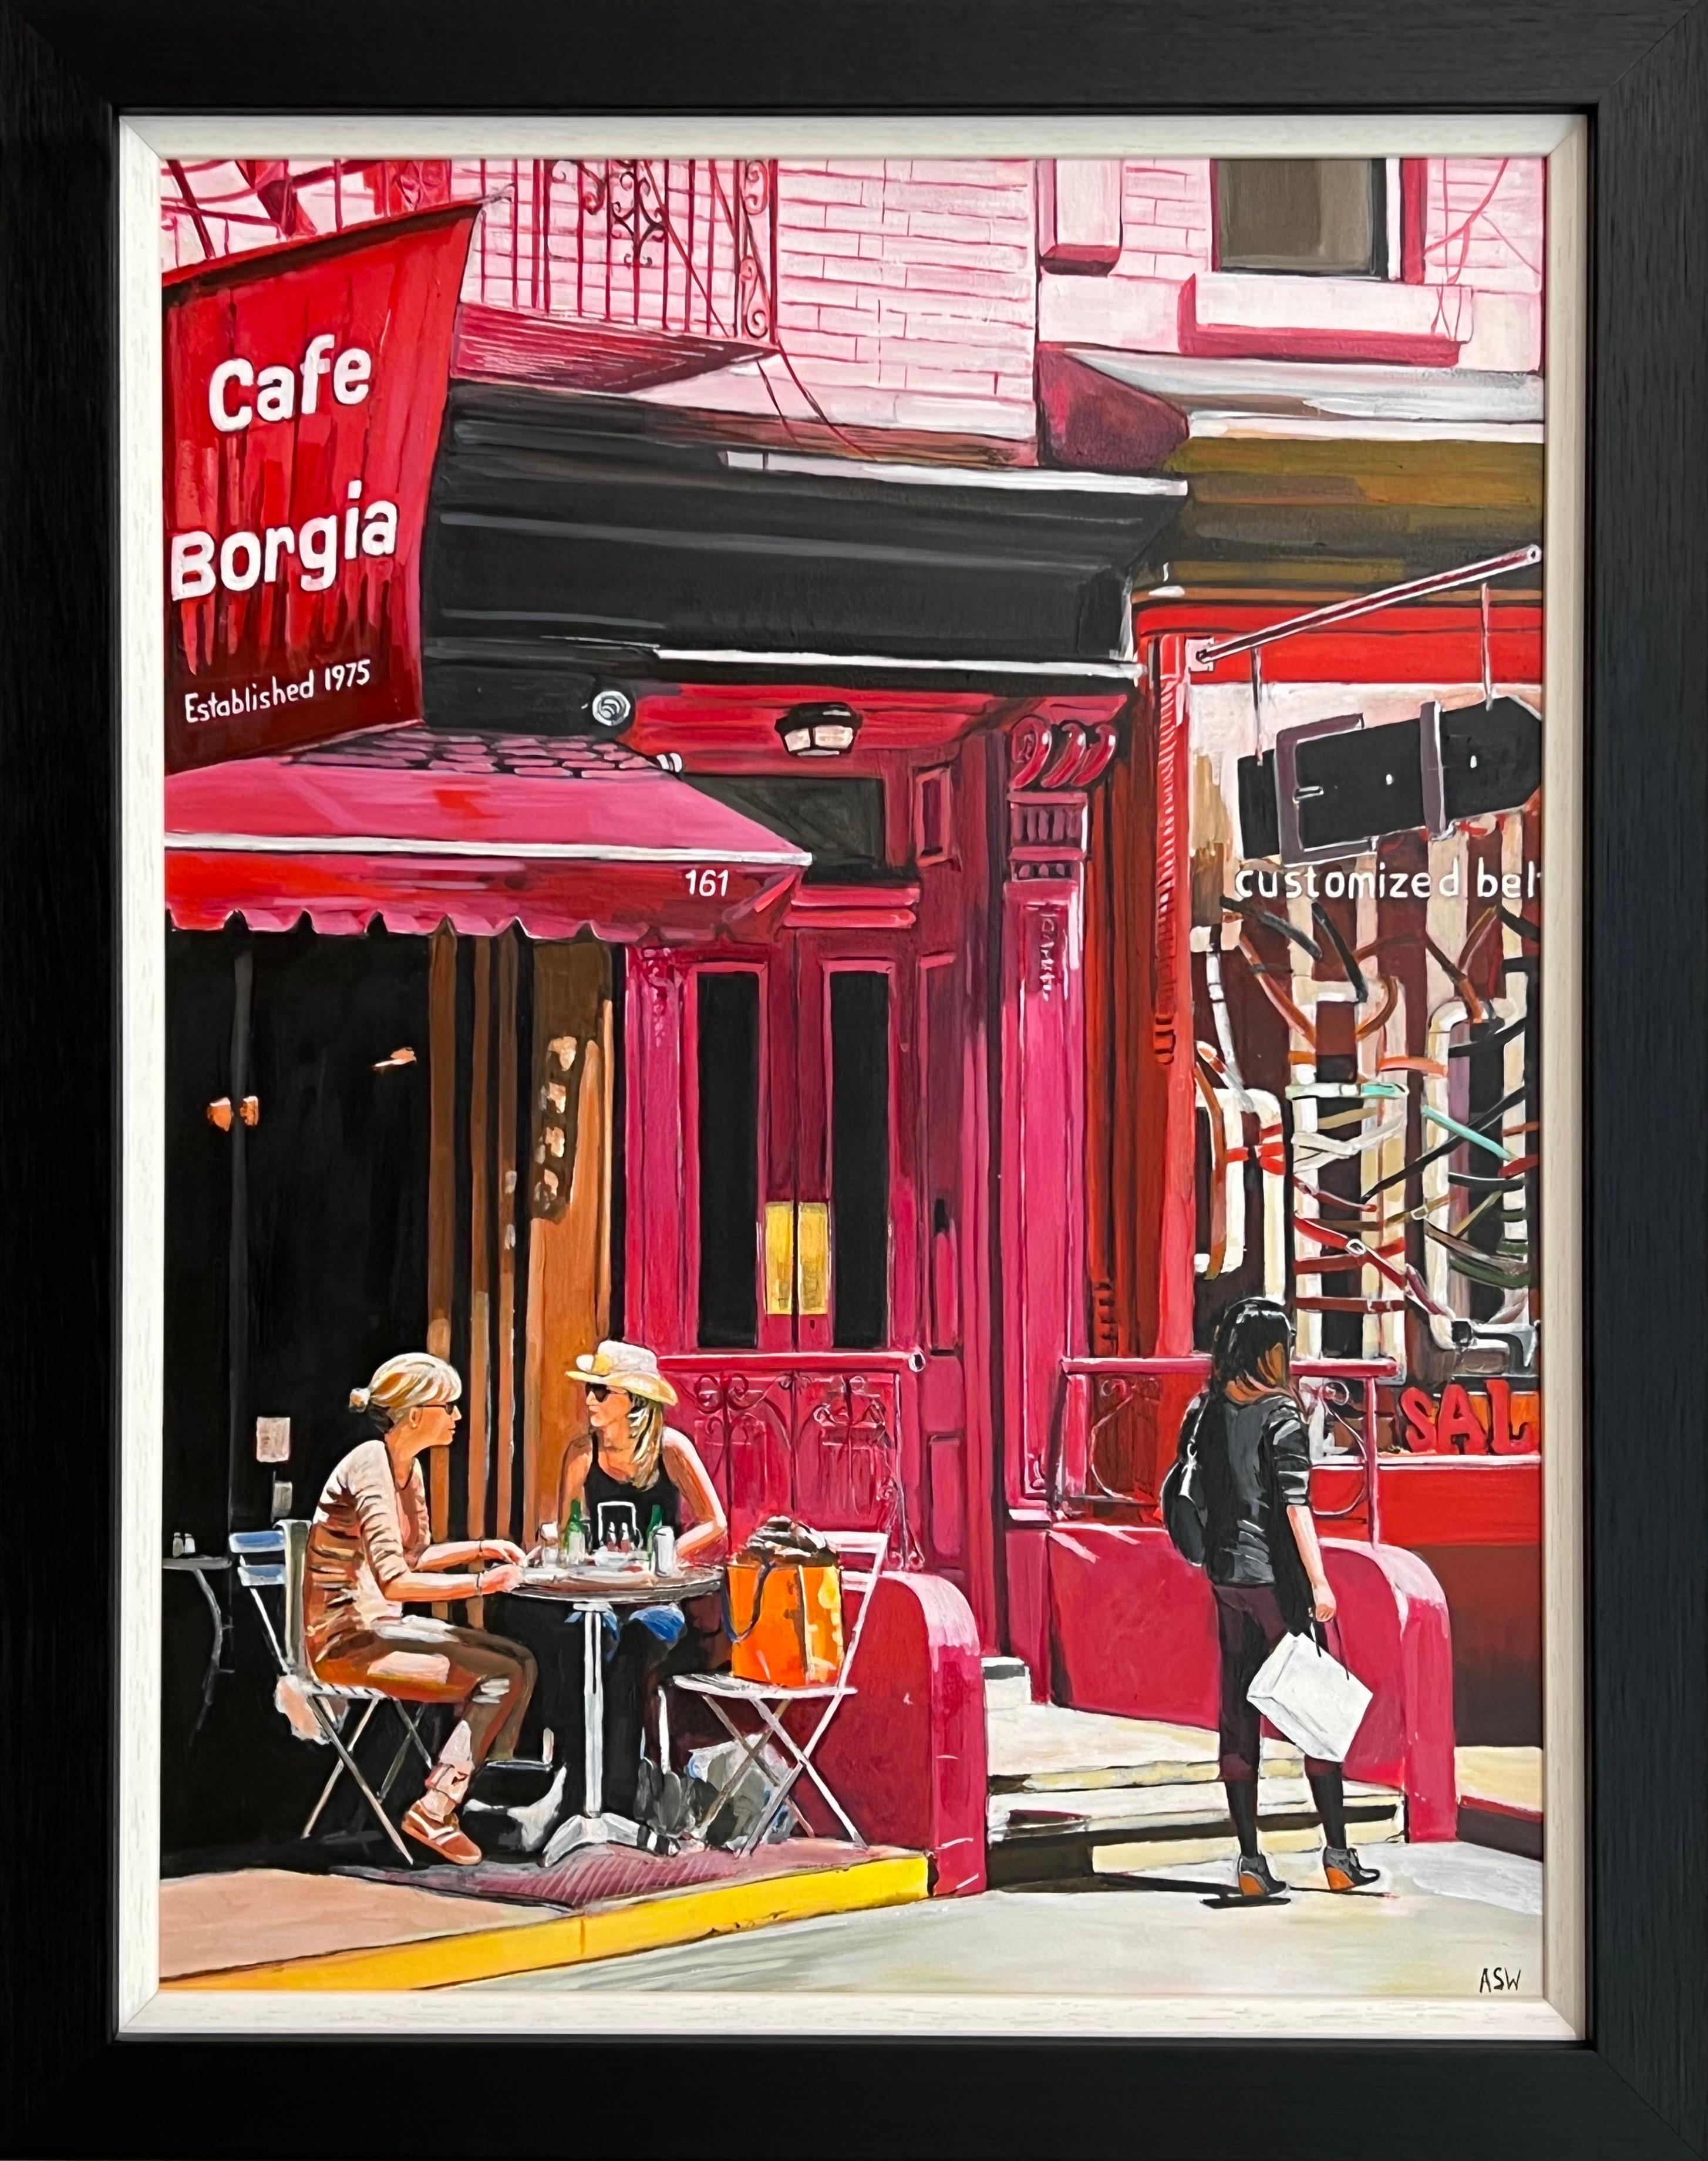 Angela Wakefield Figurative Painting – Cafe Borgia in New York City mit weiblichen Figuren der zeitgenössischen britischen Künstlerin